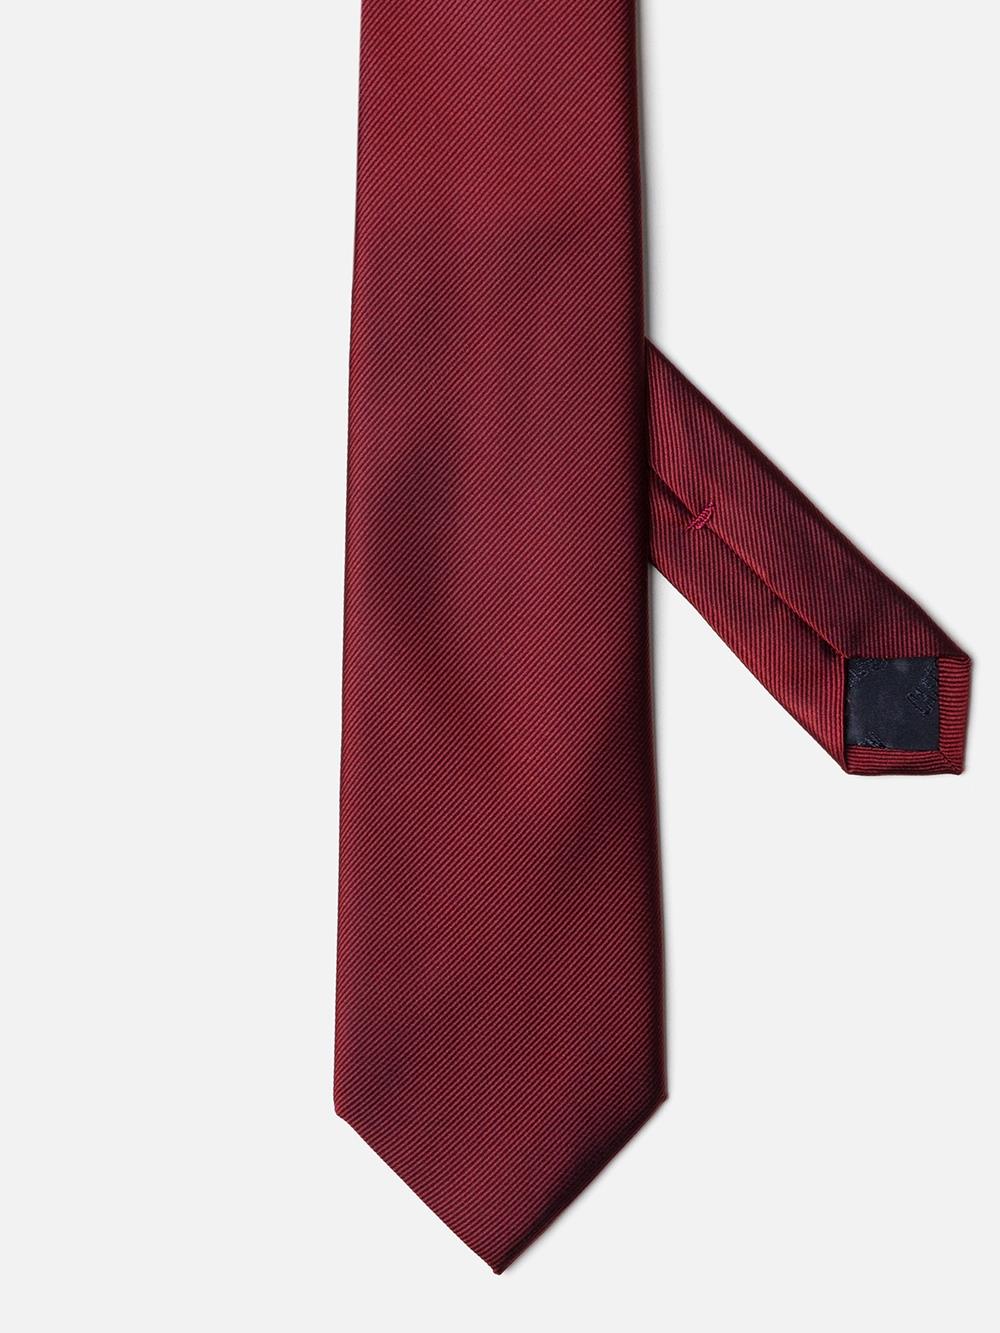 Cravate en soie sergée rouge